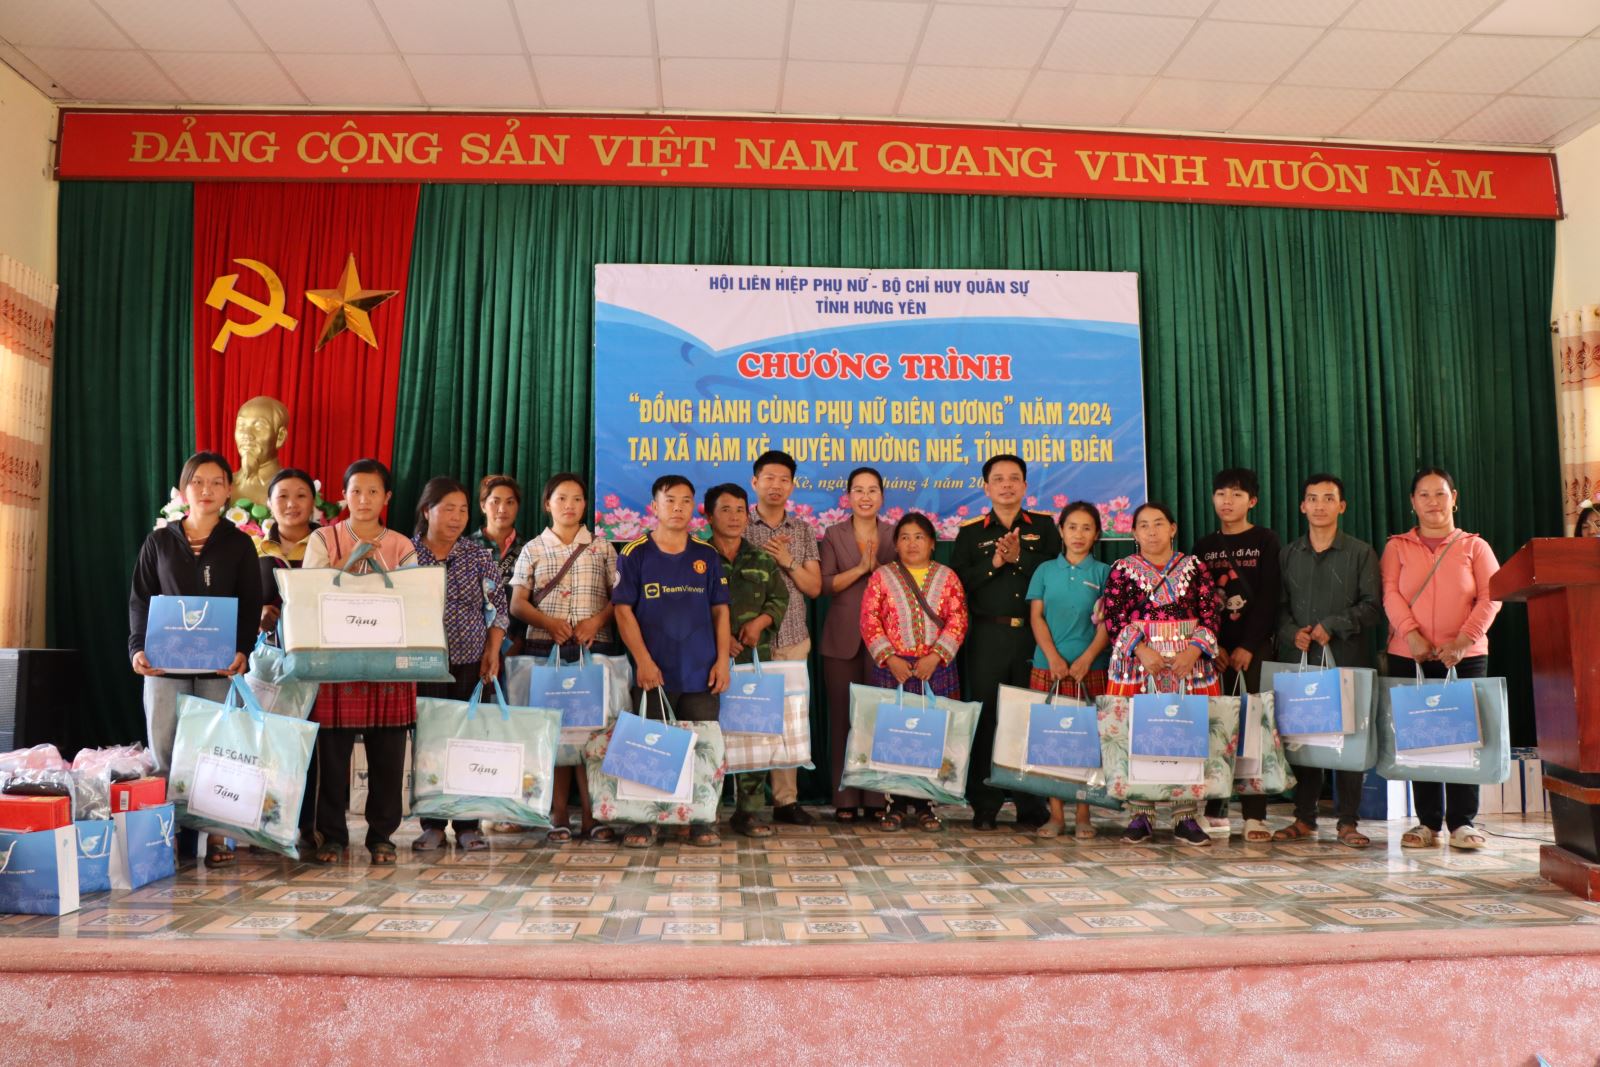 Hội LHPN tỉnh Hưng Yên tổ chức hoạt động về nguồn kỷ niệm 70 năm Chiến thắng Điện Biên Phủ và thực hiện Chương trình “Đồng hành cùng phụ nữ biên cương” năm 2024 tại tỉnh Điện Biên